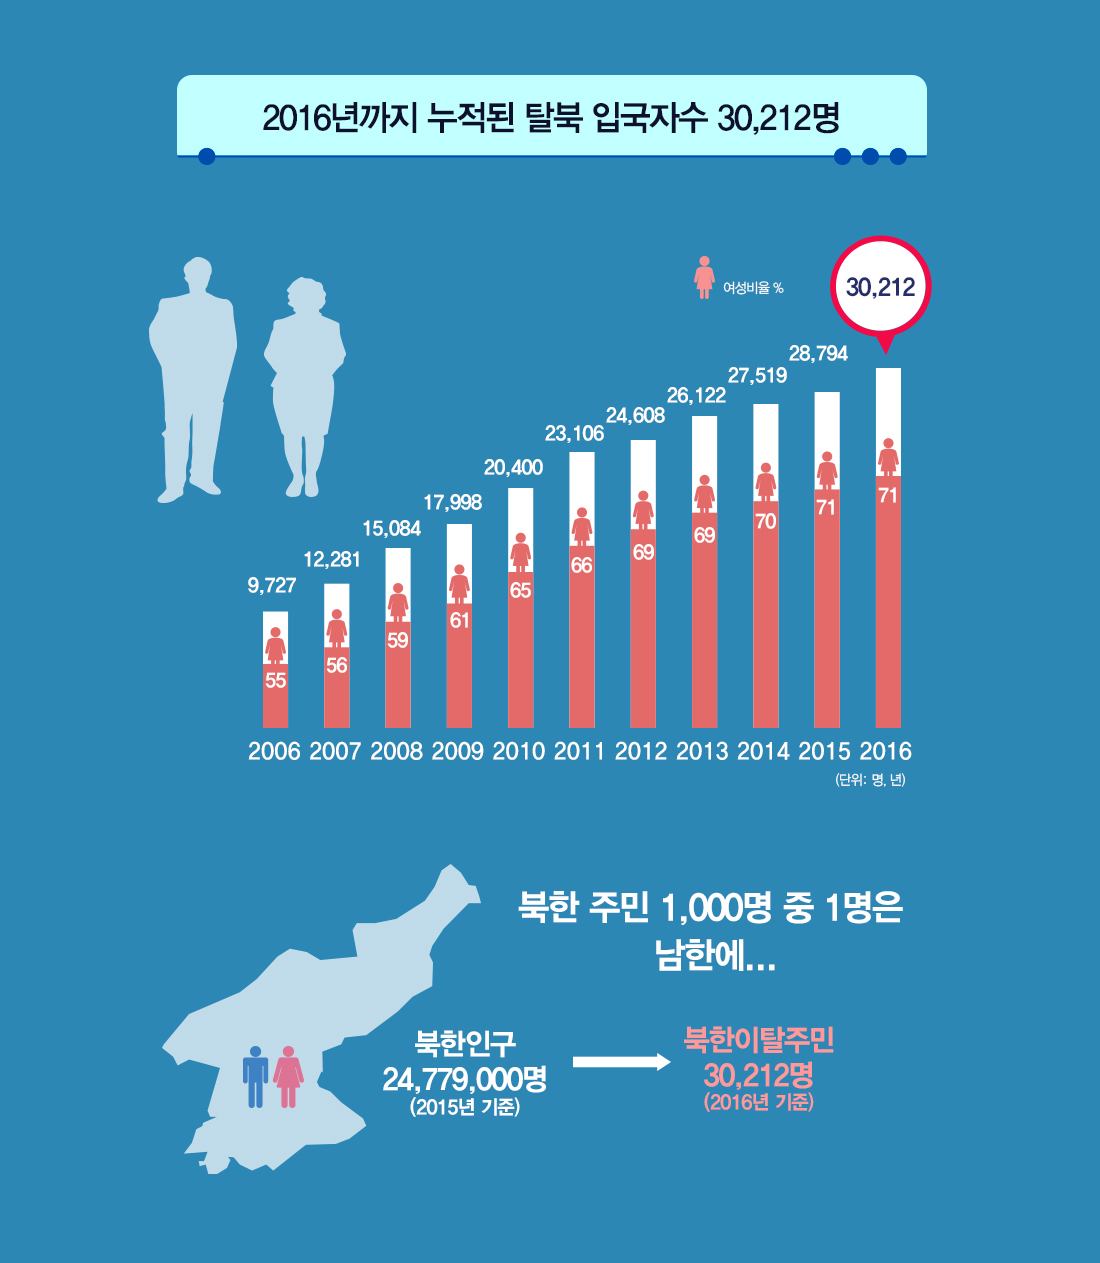 2016년까지 누적된 탈북 입국자수 30,212명